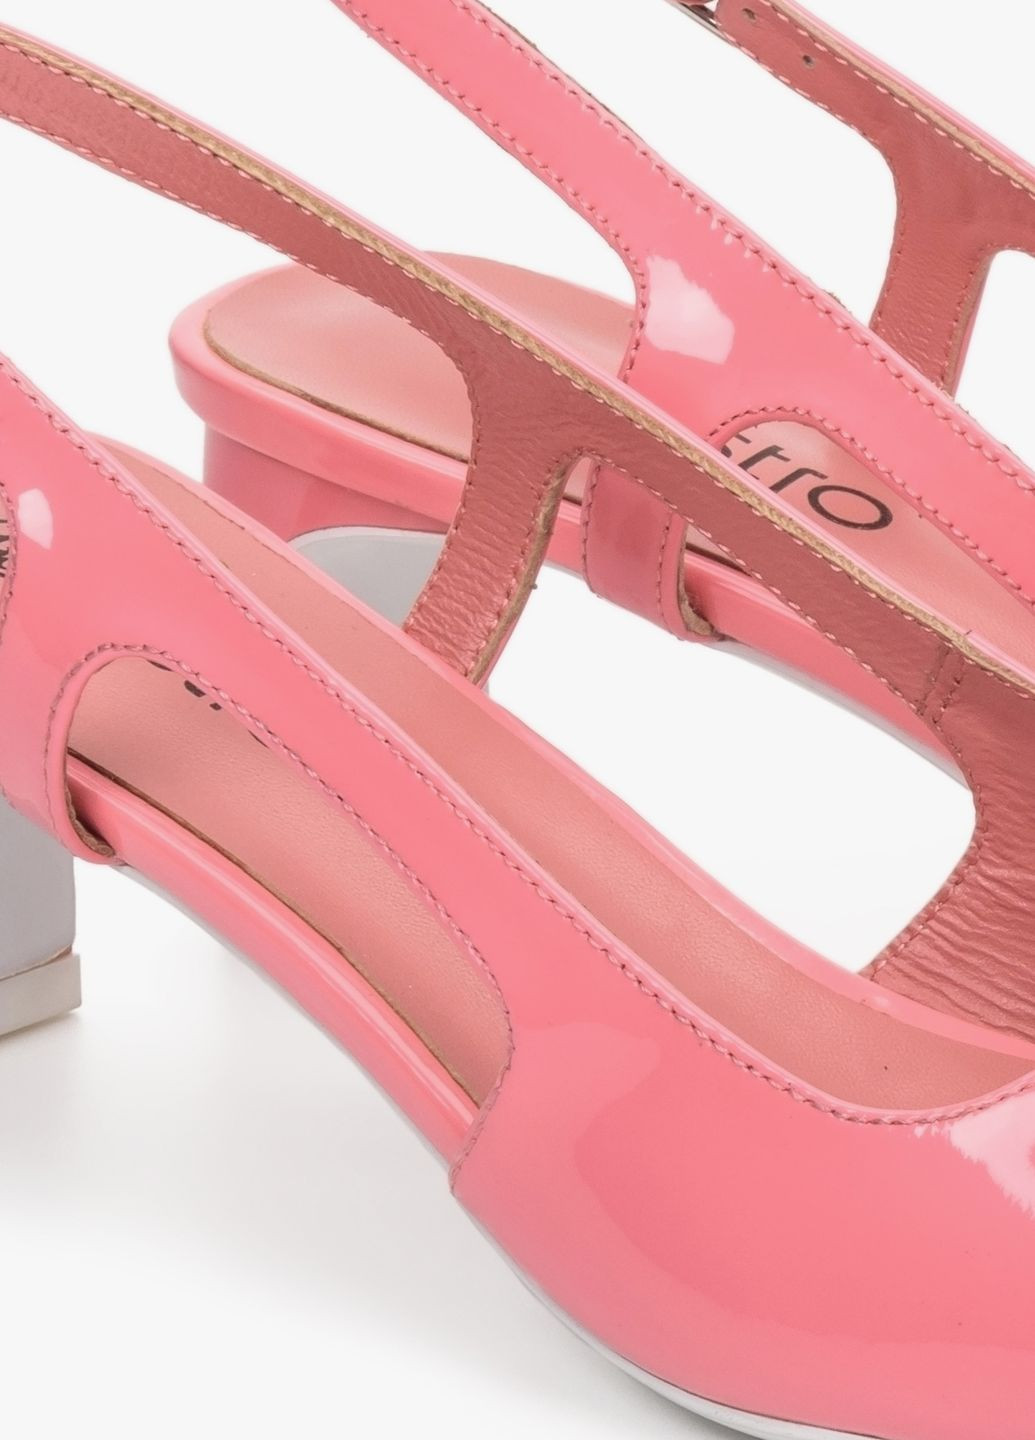 Туфли, цвет розовый Estro